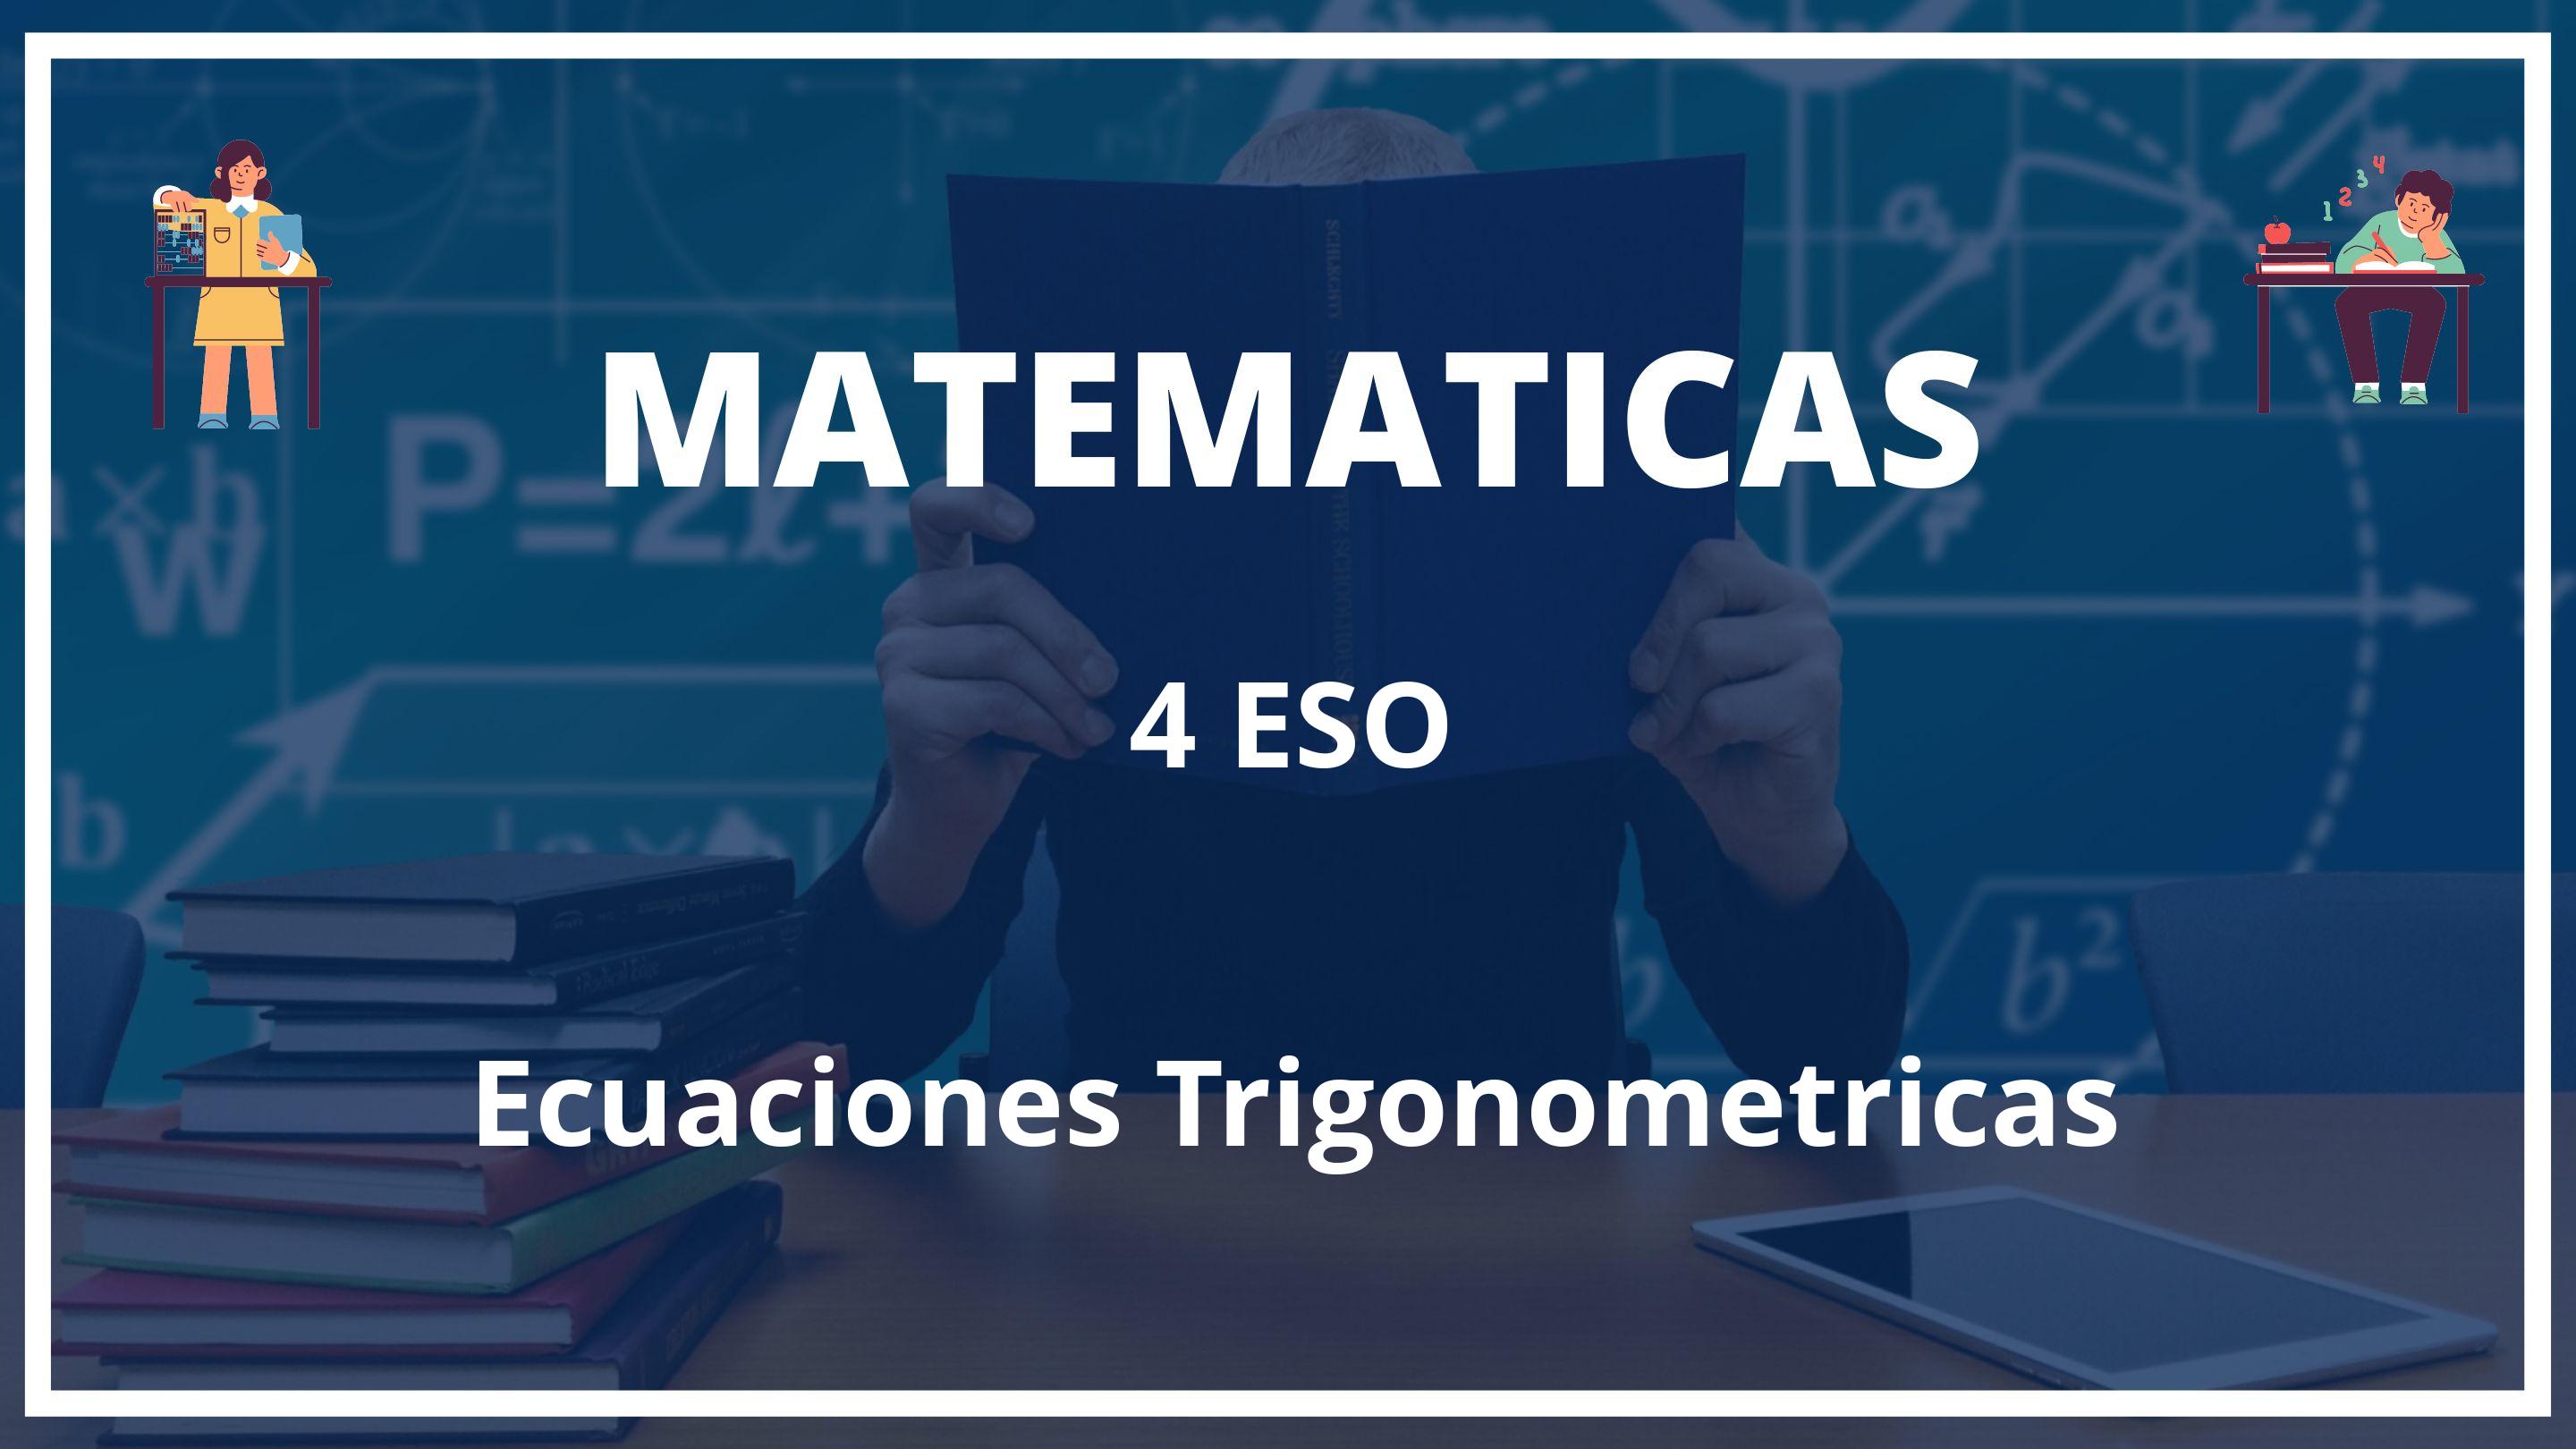 Ecuaciones Trigonometricas 4 ESO